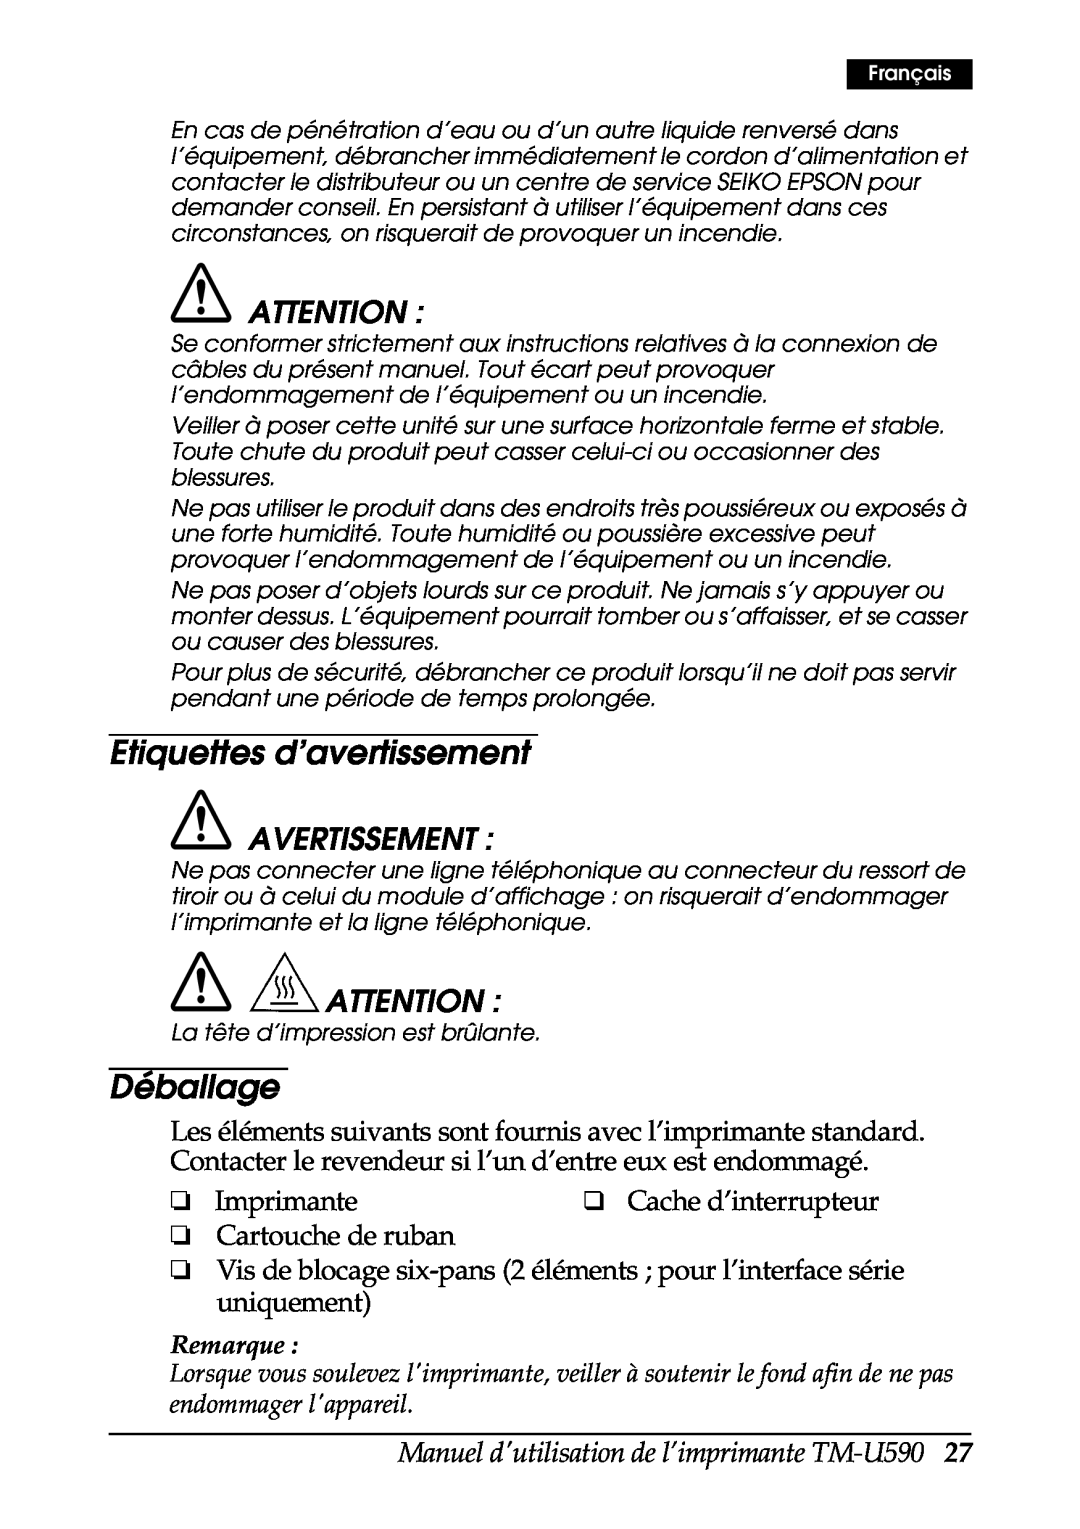 FARGO electronic Etiquettes d’avertissement, Déballage, Manuel dutilisation de l’imprimante TM-U590, Avertissement 